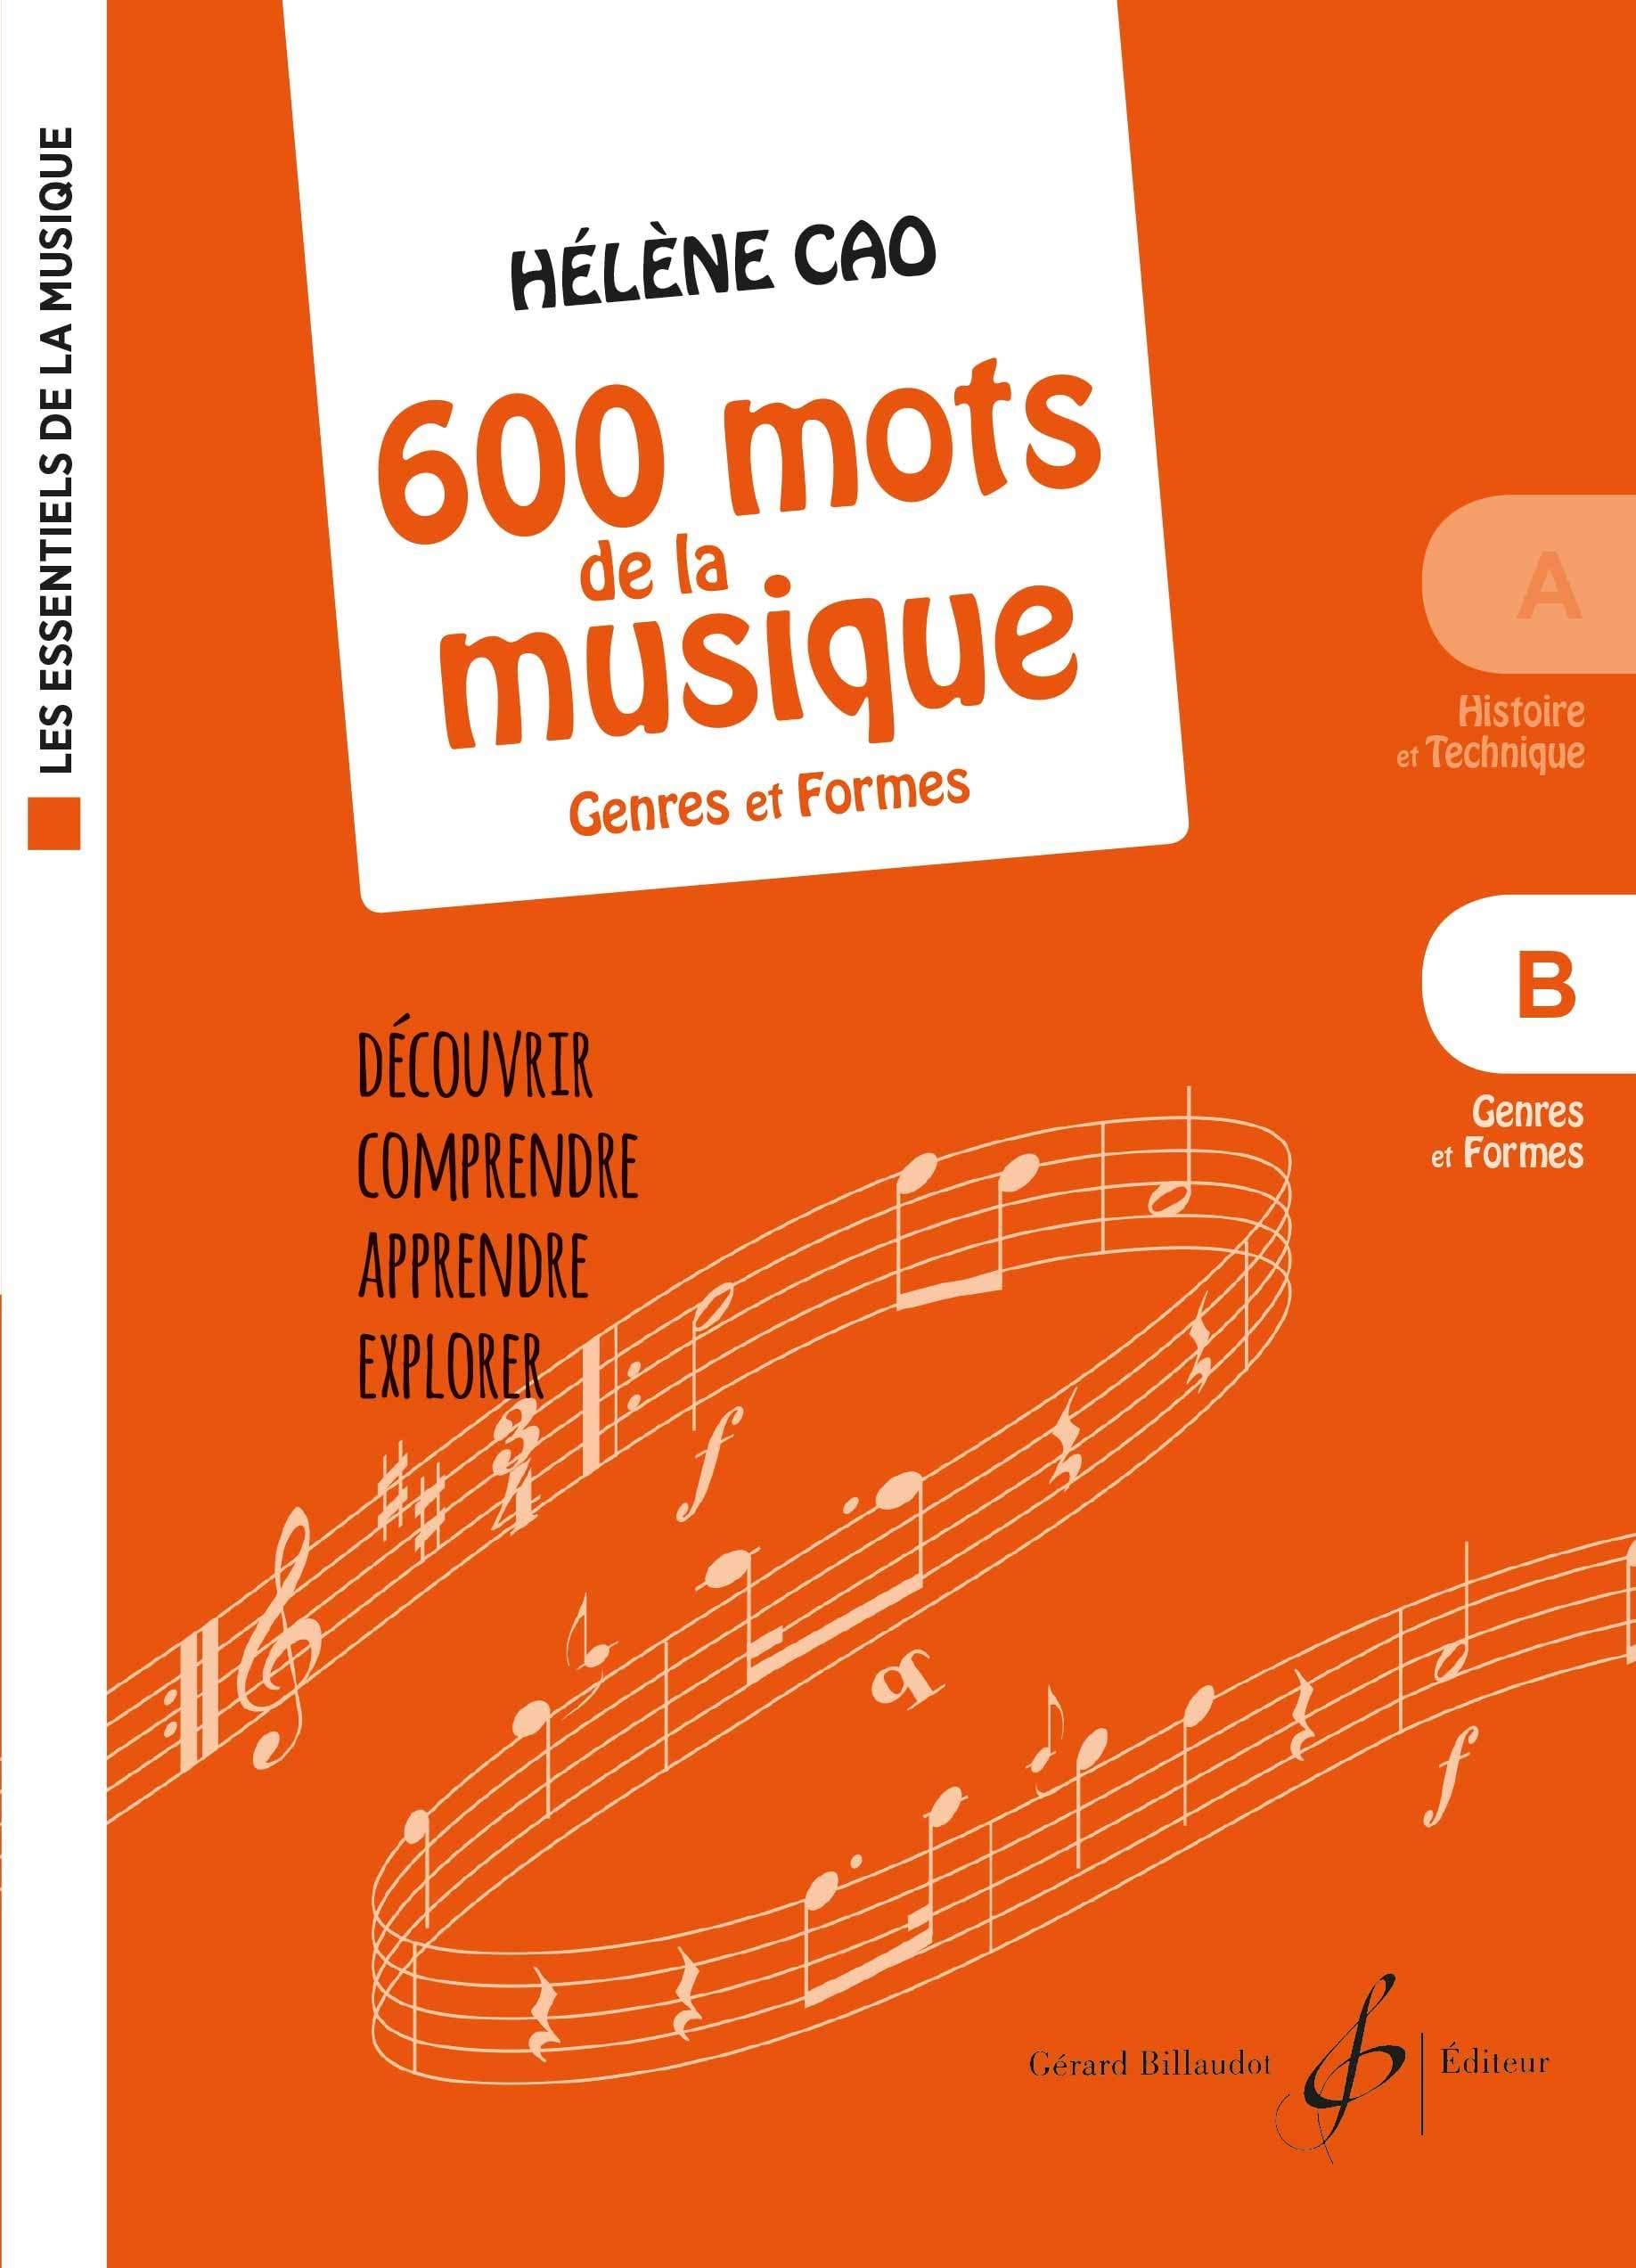 Les Essentiels de la musique - 600 mots de la musique vol. B : genres et formes (CAO HELENE)